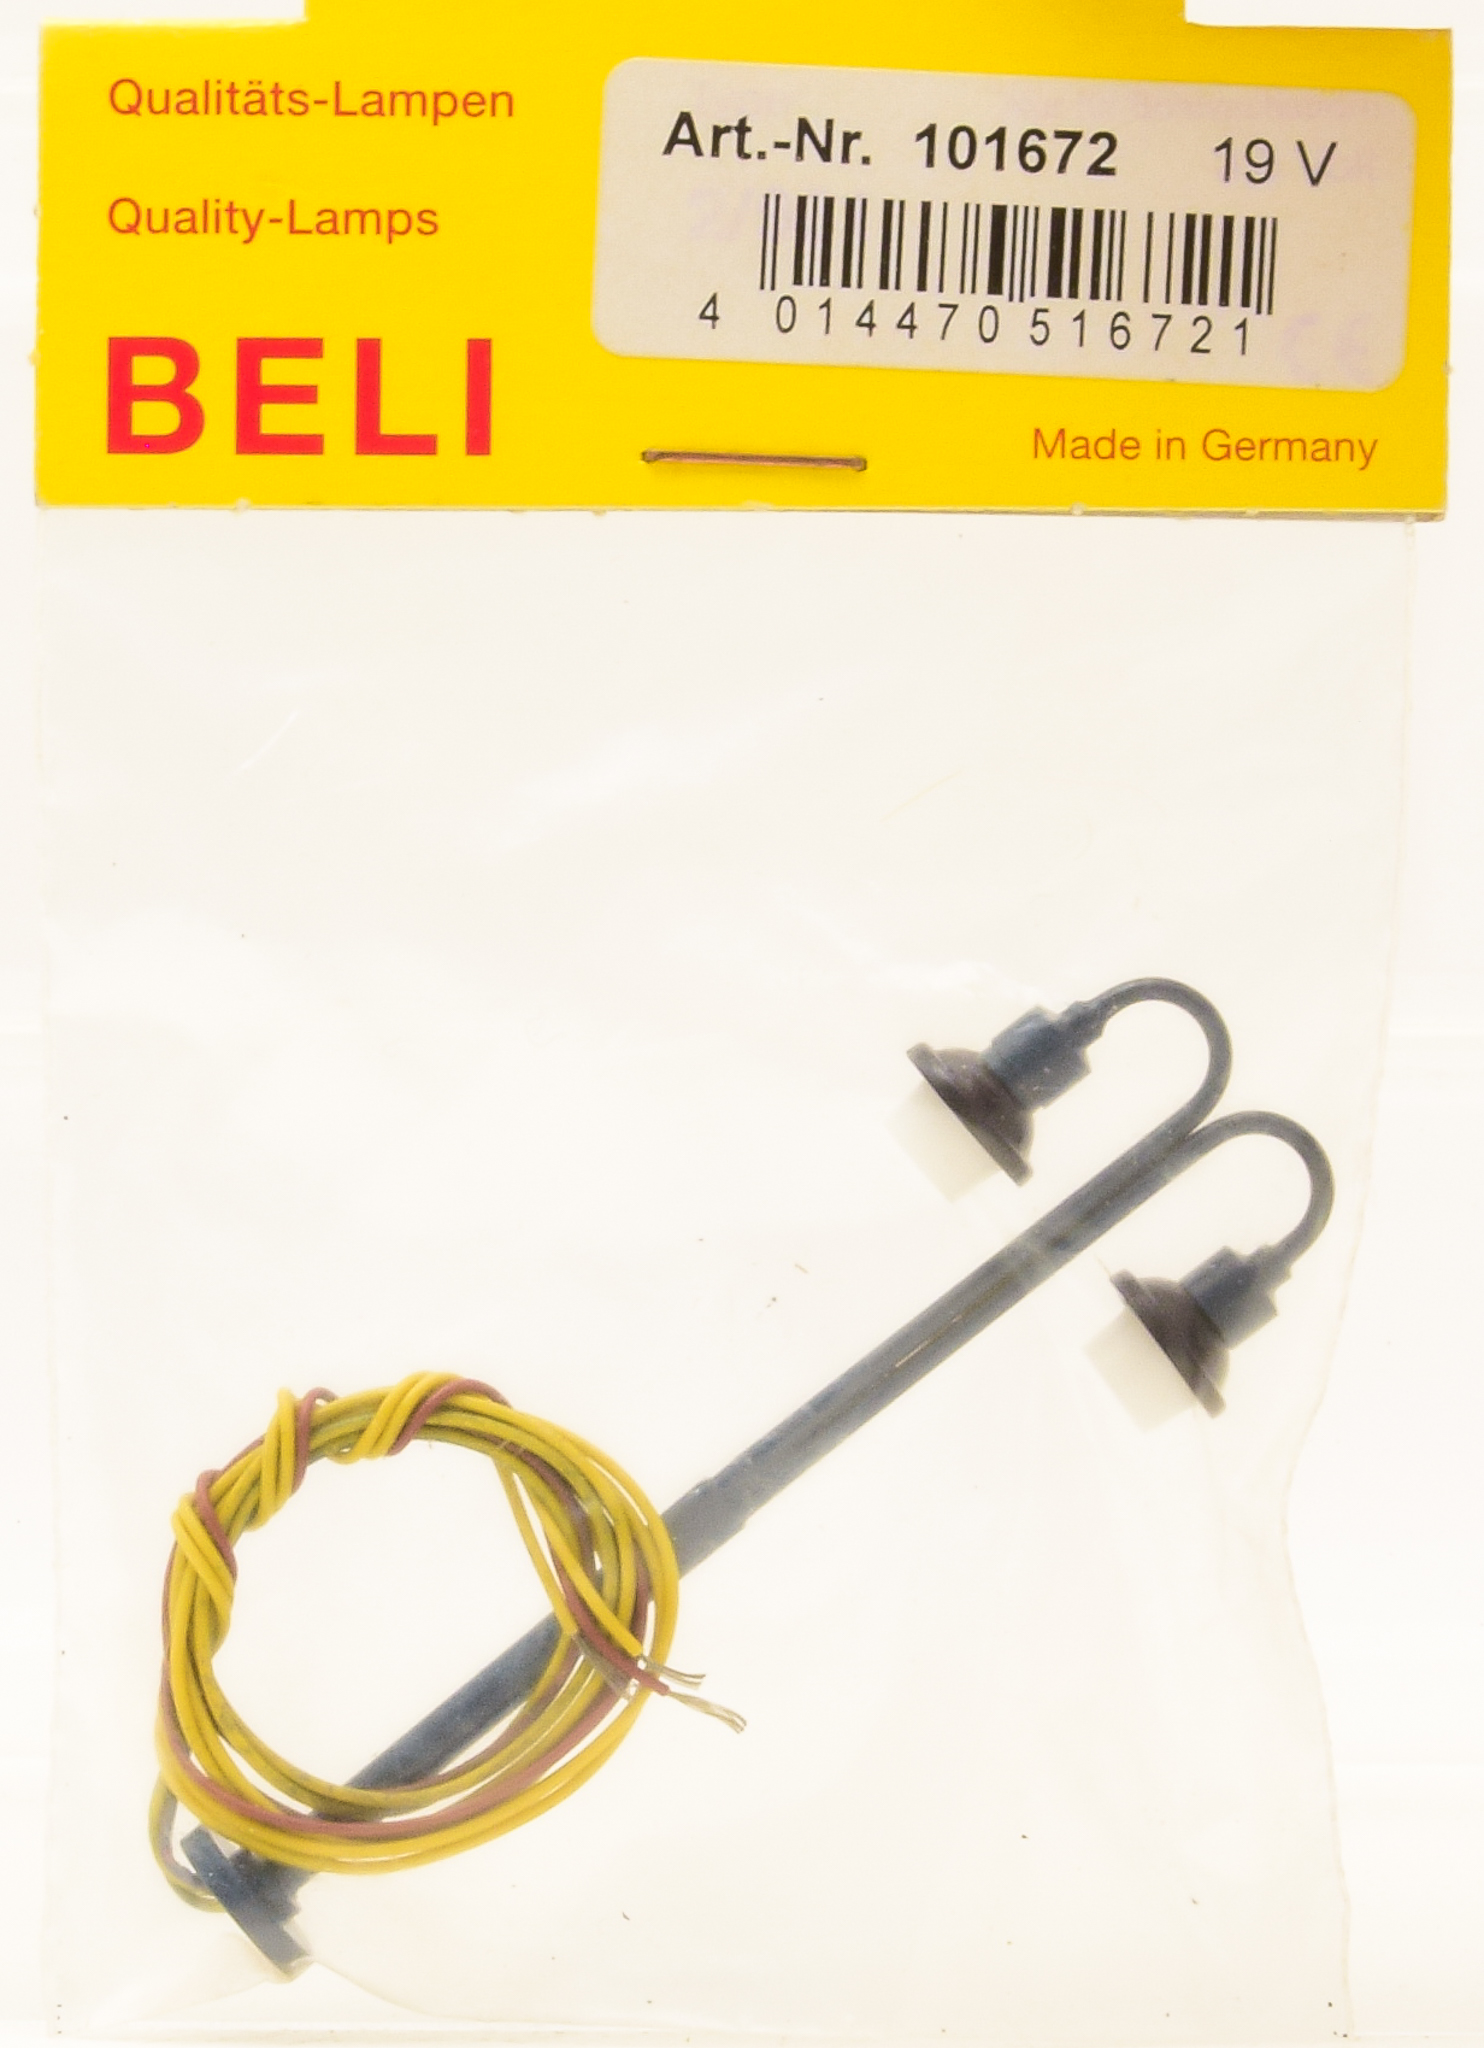 Gebrauchtemodellbahn | Beli 101672 (1:87) – Bogenlampe, 2-Fach, Höhe 73 mm